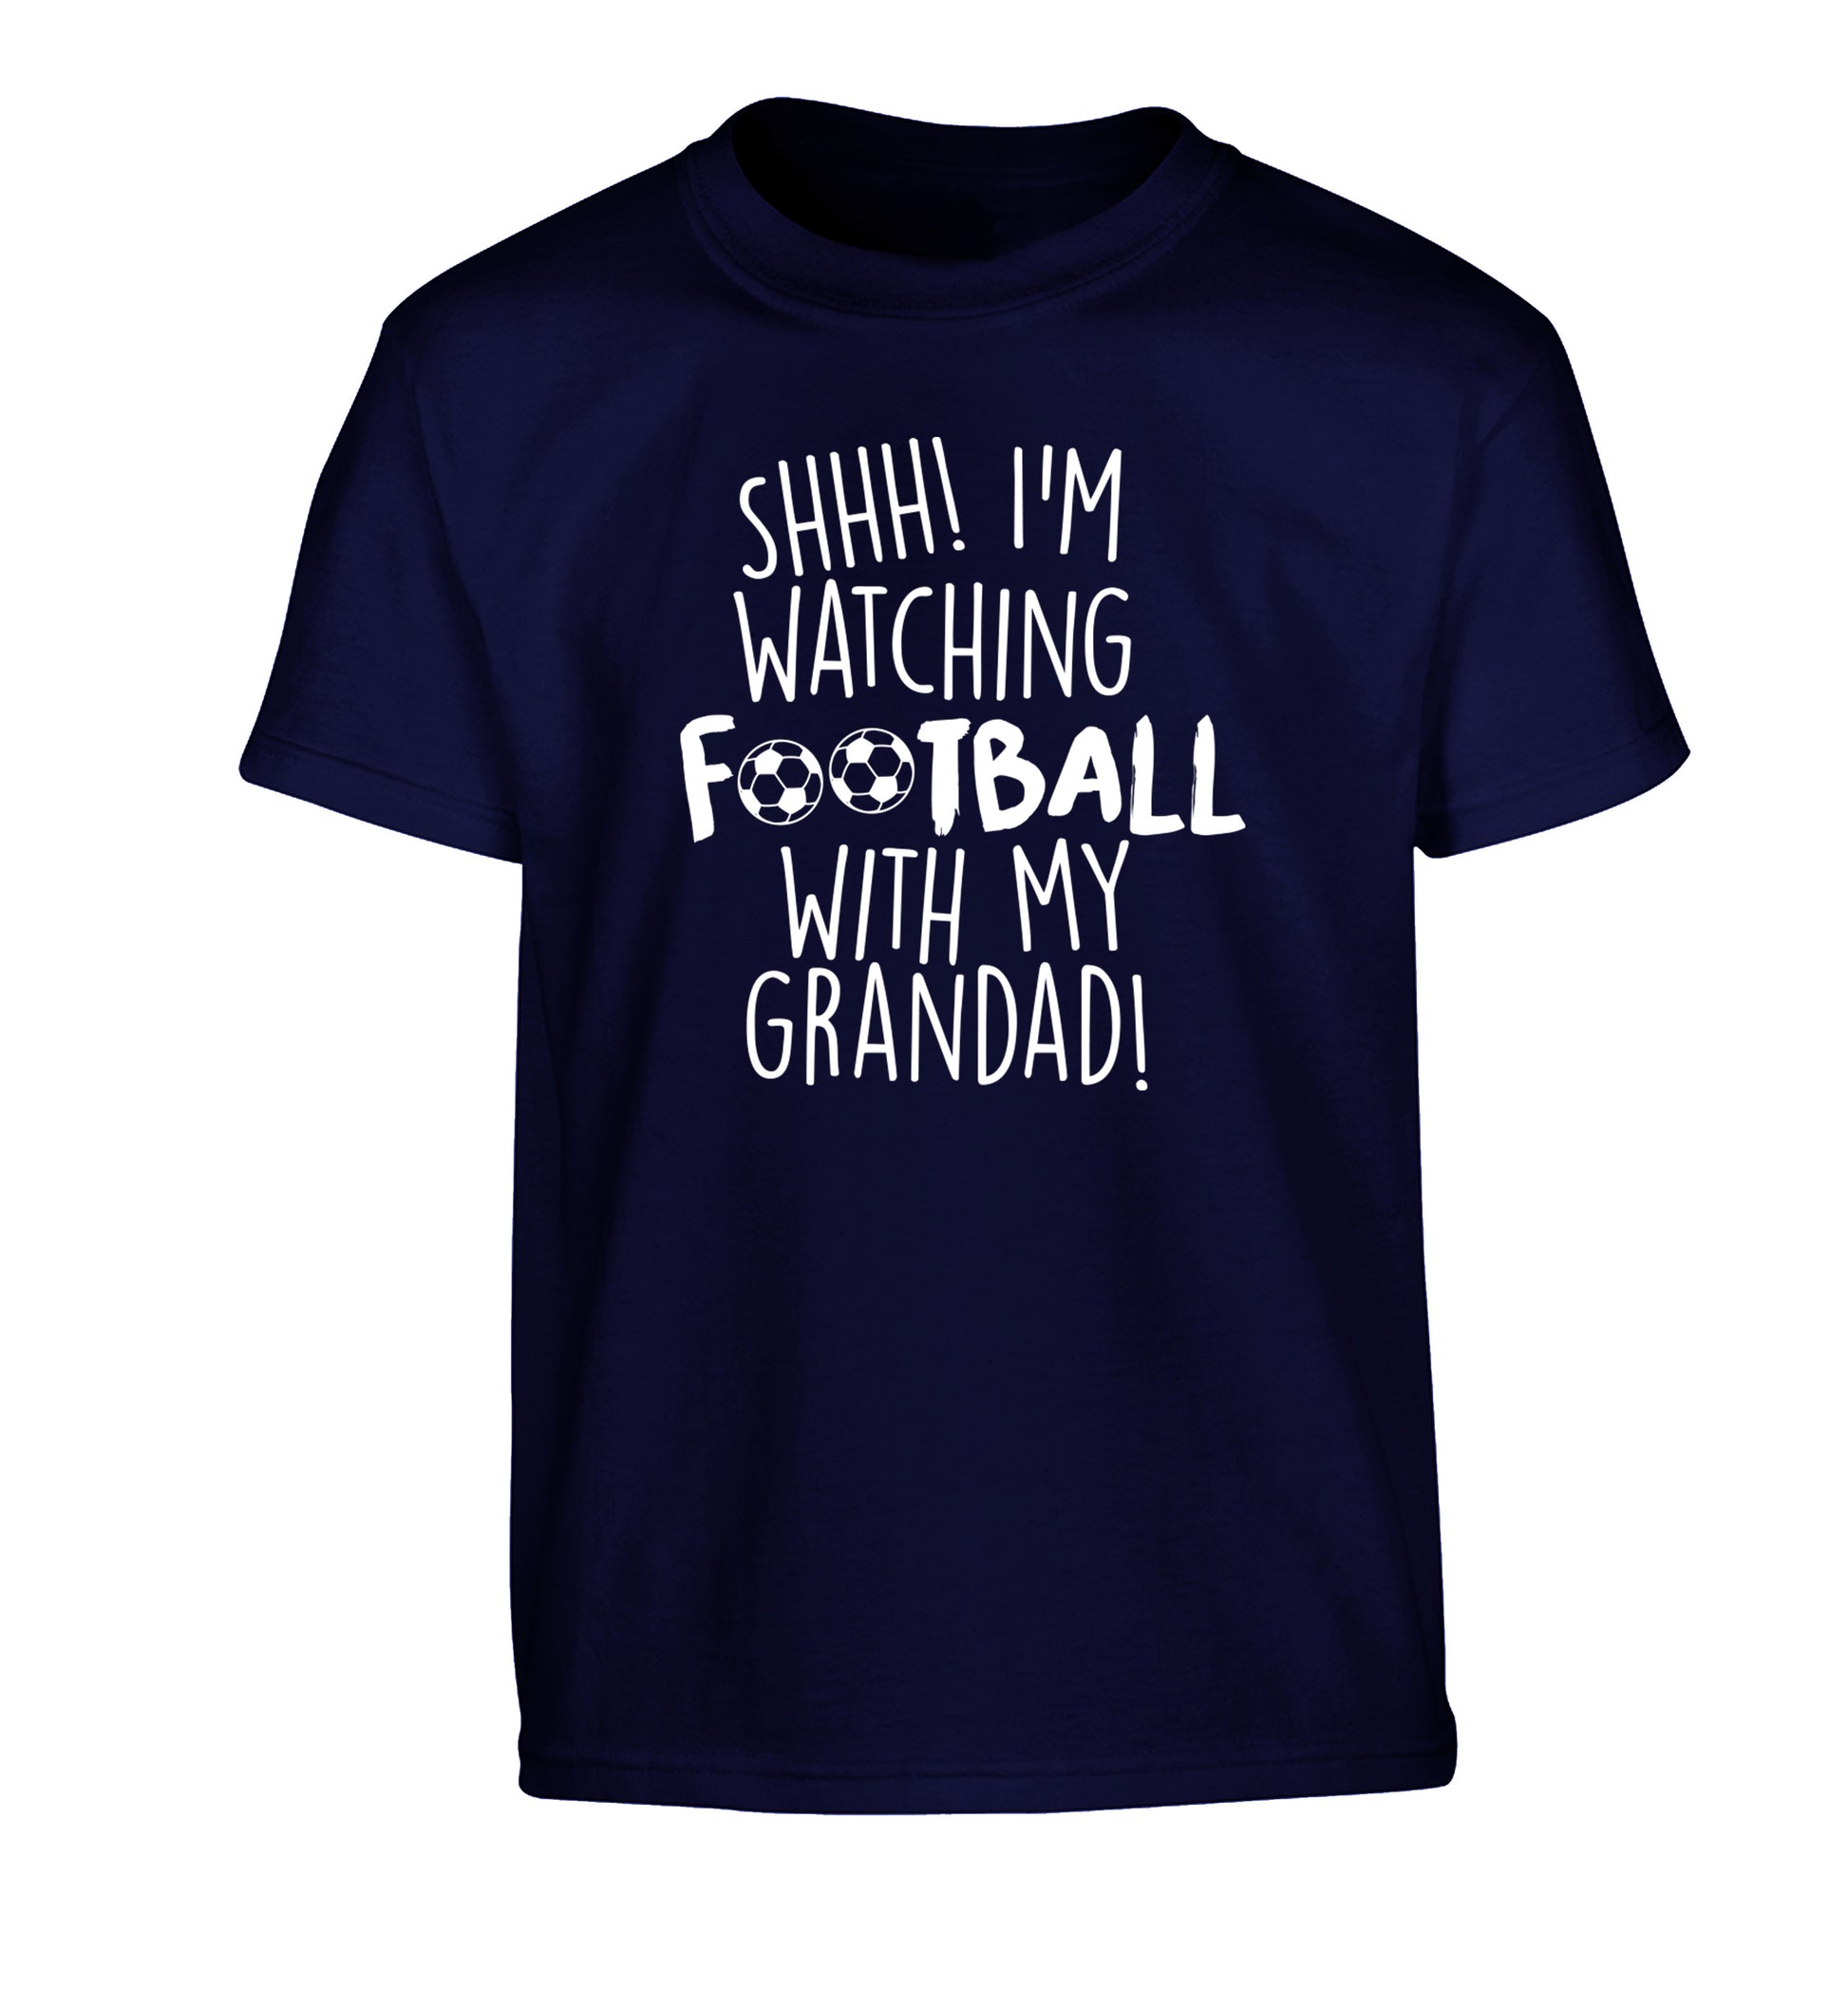 Shhh I'm watching football with my grandad Children's navy Tshirt 12-14 Years